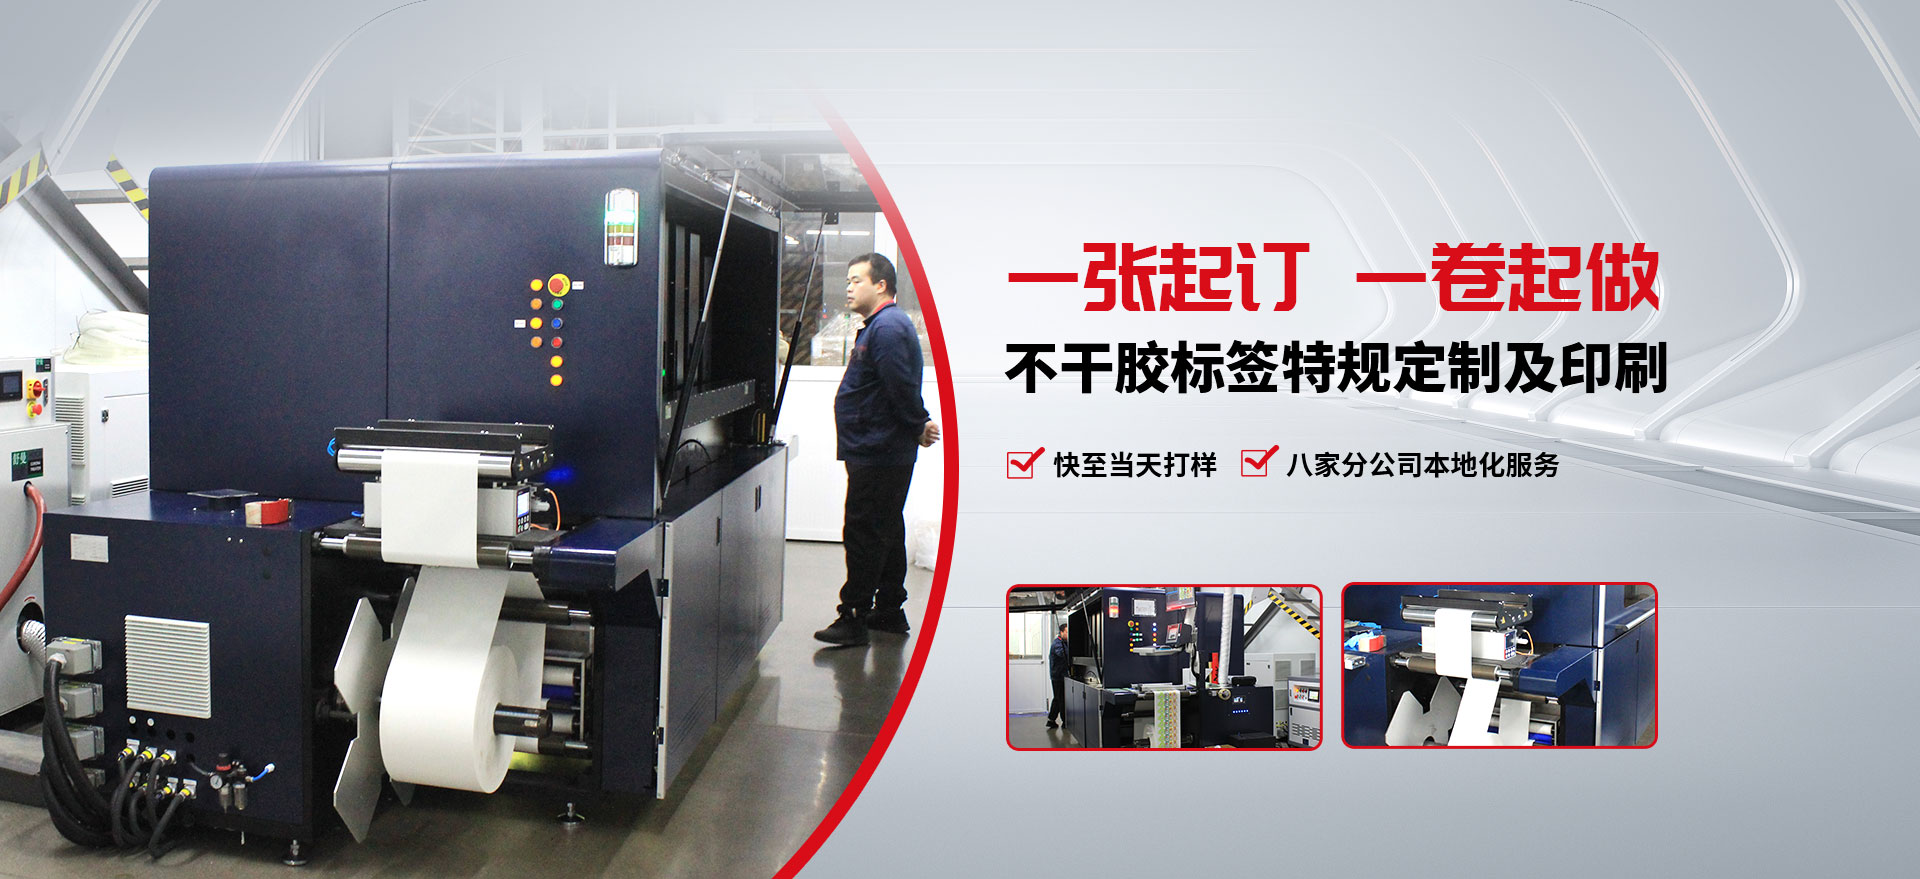 上海樱花可定制特规及印刷八家分公司本地化服务